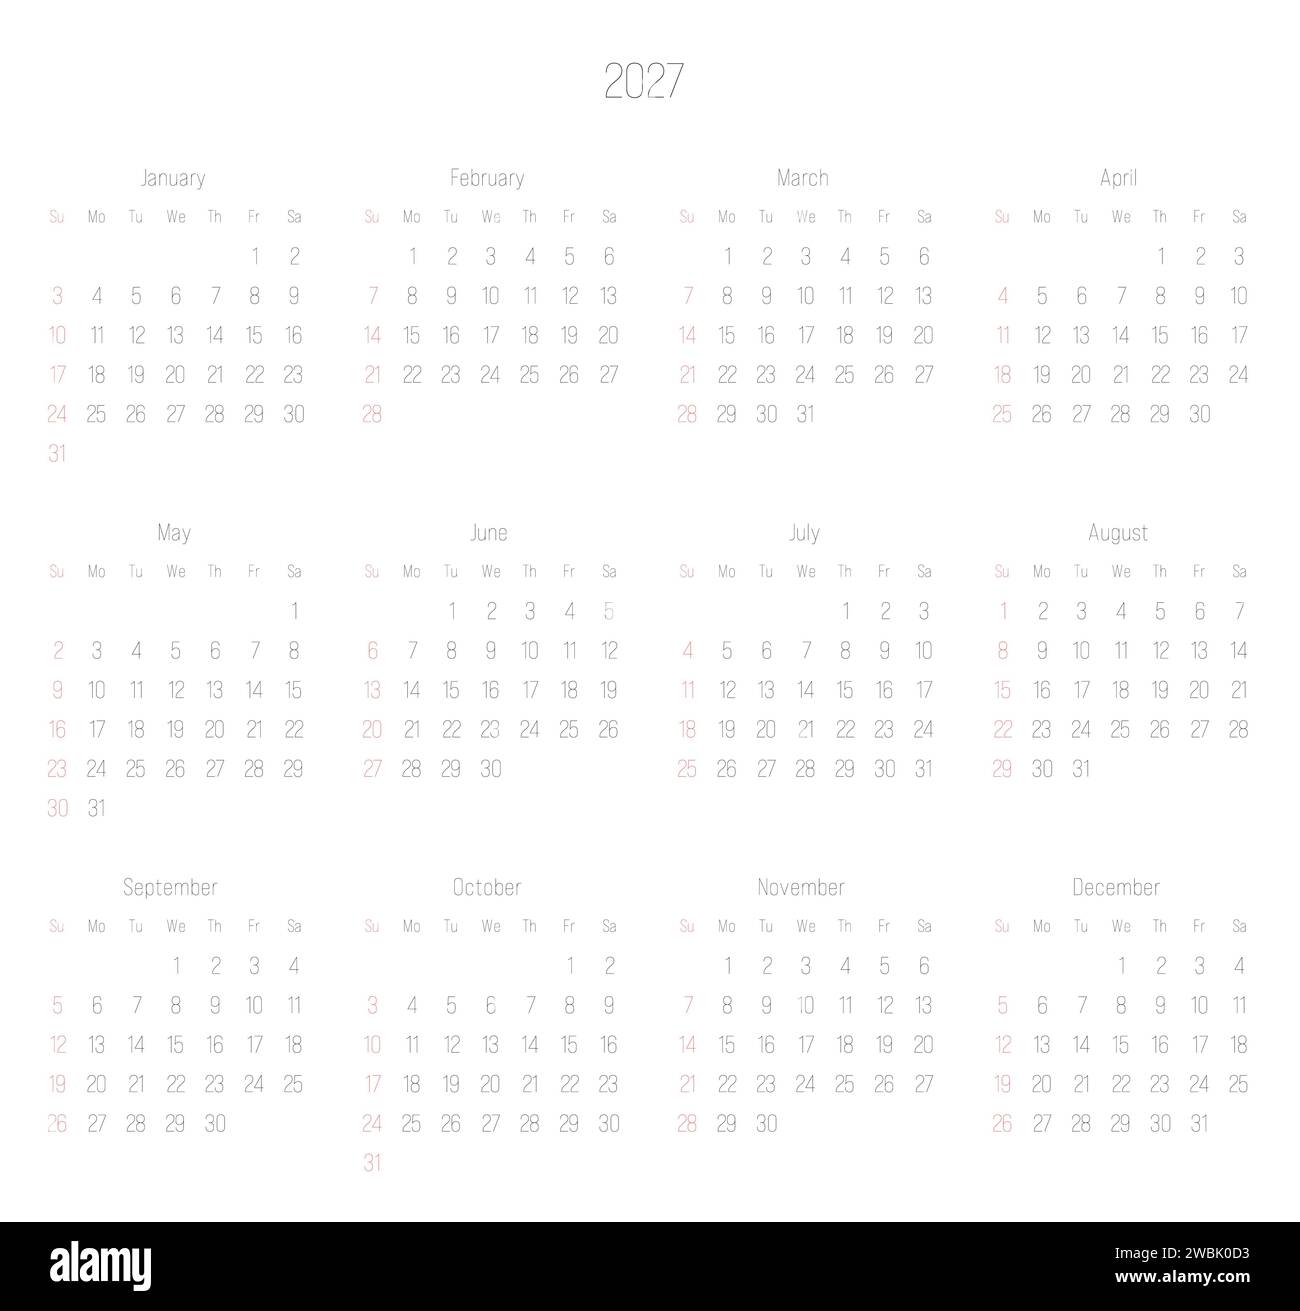 Calendario mensile dell'anno 2027. La settimana inizia la domenica. Blocco di mesi in due file e sei colonne disposizione orizzontale. Design minimalista e sottile. Illustrazione vettoriale. Illustrazione Vettoriale